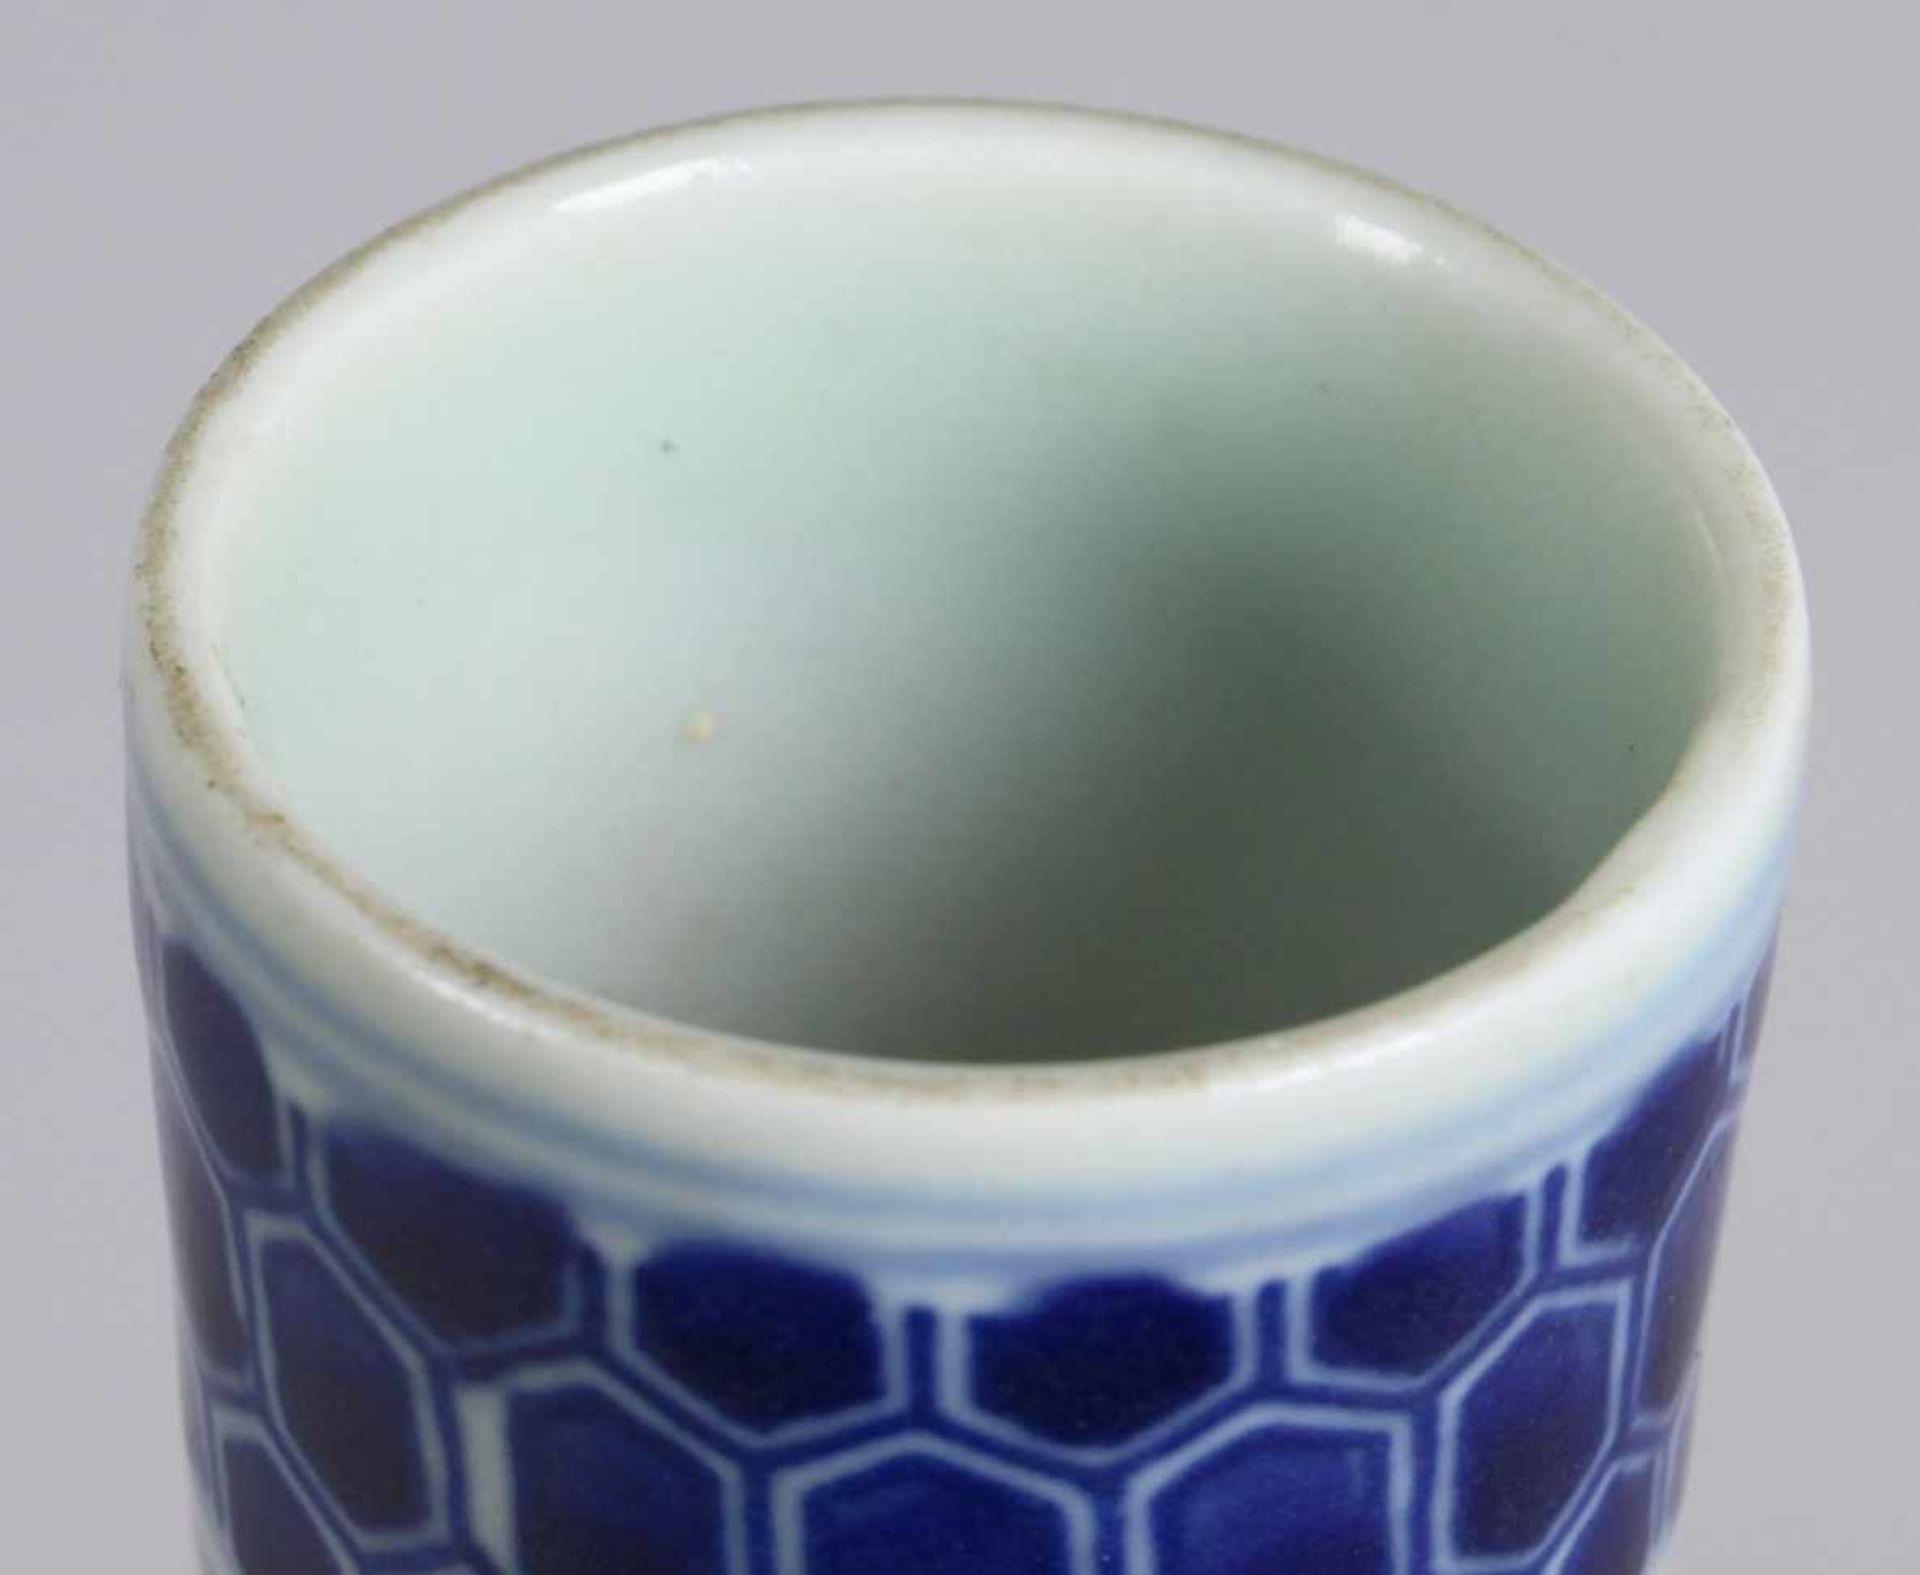 Porzellan-Ziervase, China, 19./20. Jh., über eingezogenem Rundstand tropfenförmiggebauchter Korpus - Bild 3 aus 5